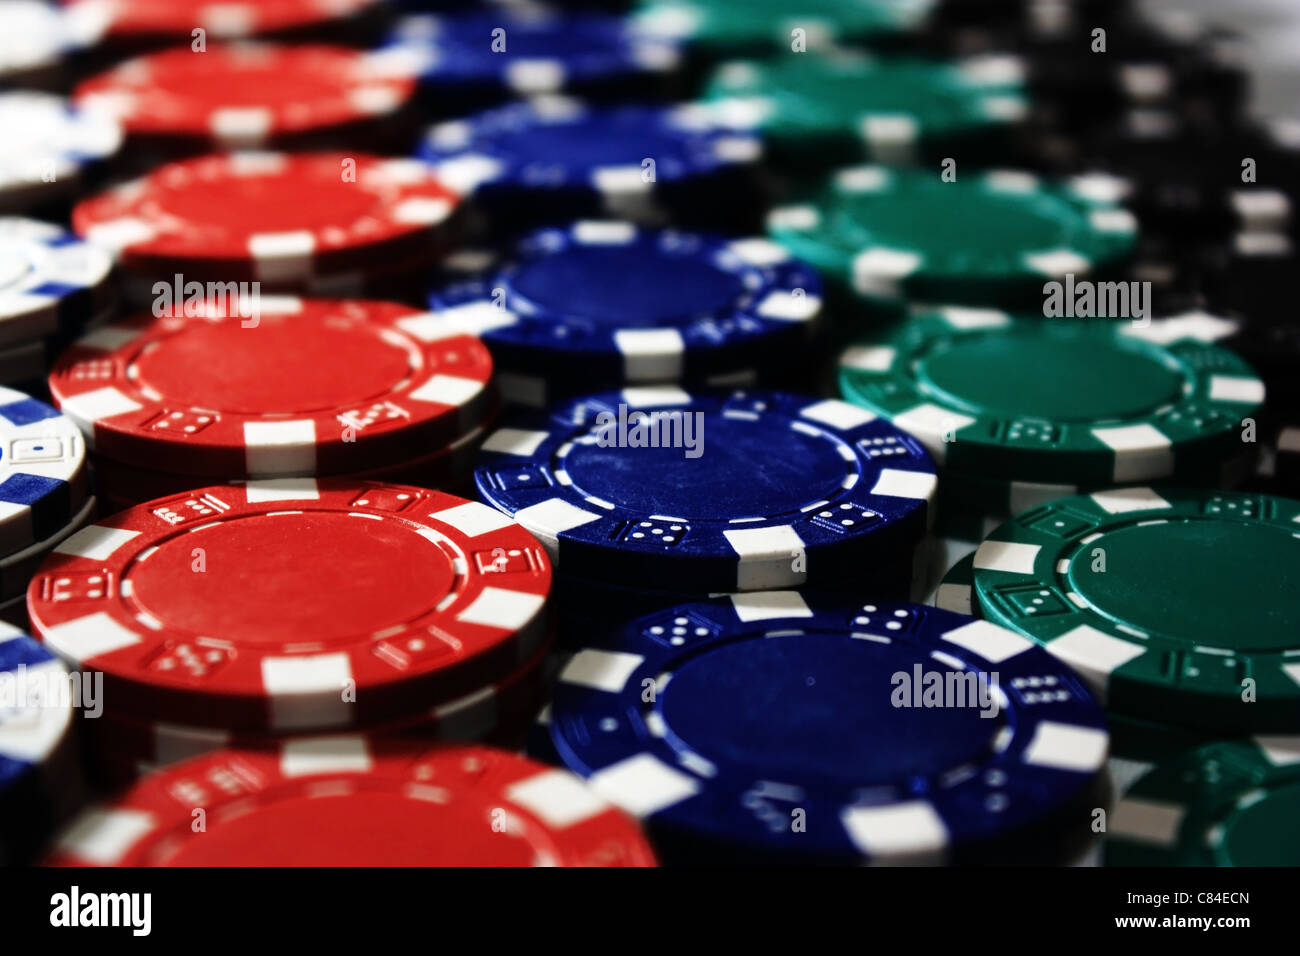 Une pile de jetons de poker avec des couleurs différentes. Banque D'Images